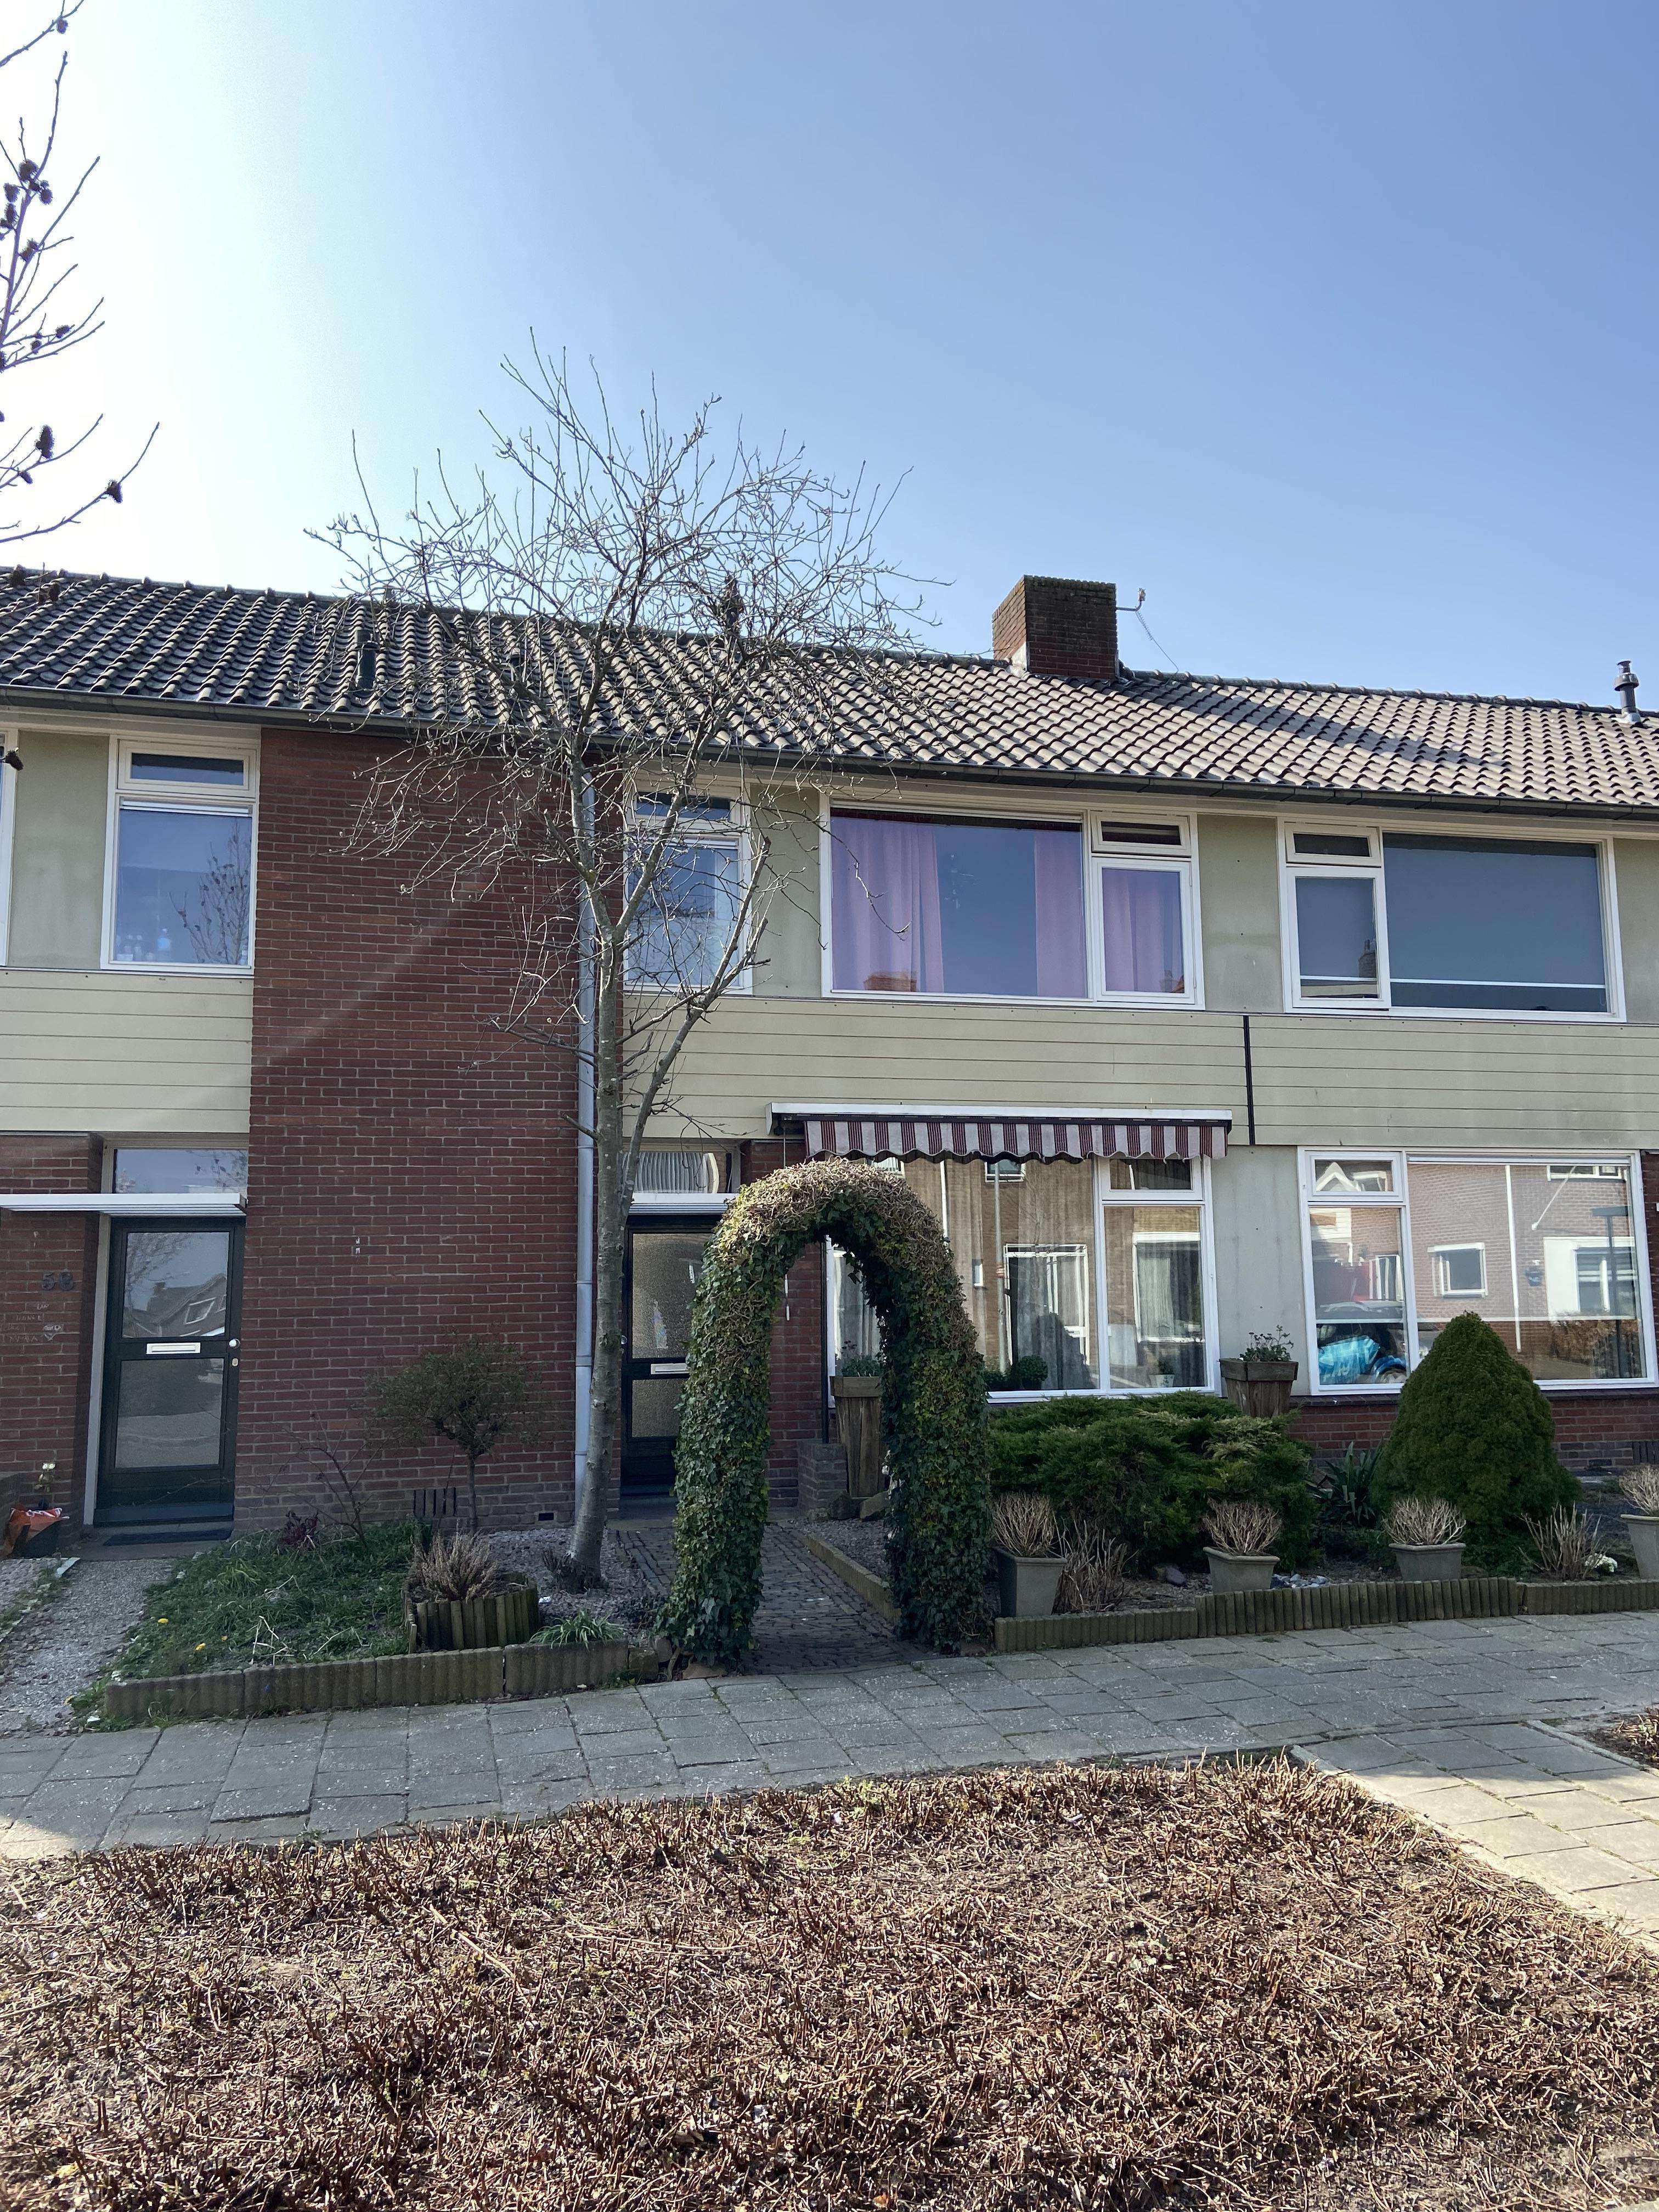 Doctor A.W. Ausemsstraat 56, 6665 DN Driel, Nederland